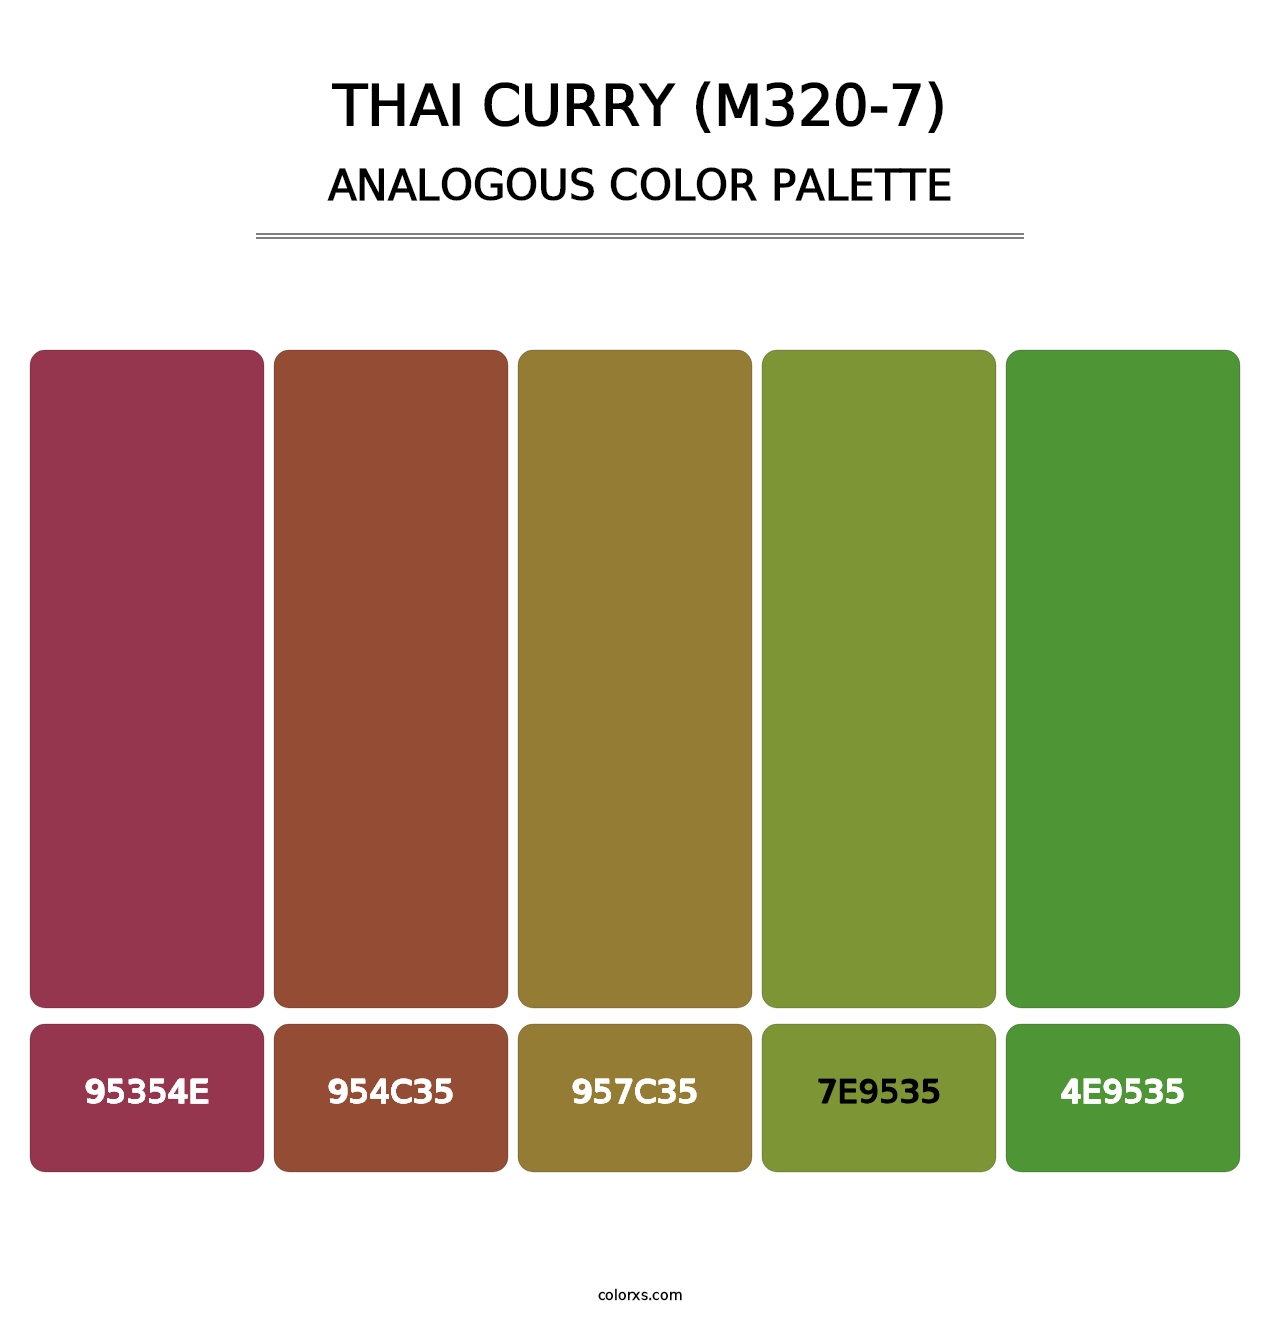 Thai Curry (M320-7) - Analogous Color Palette